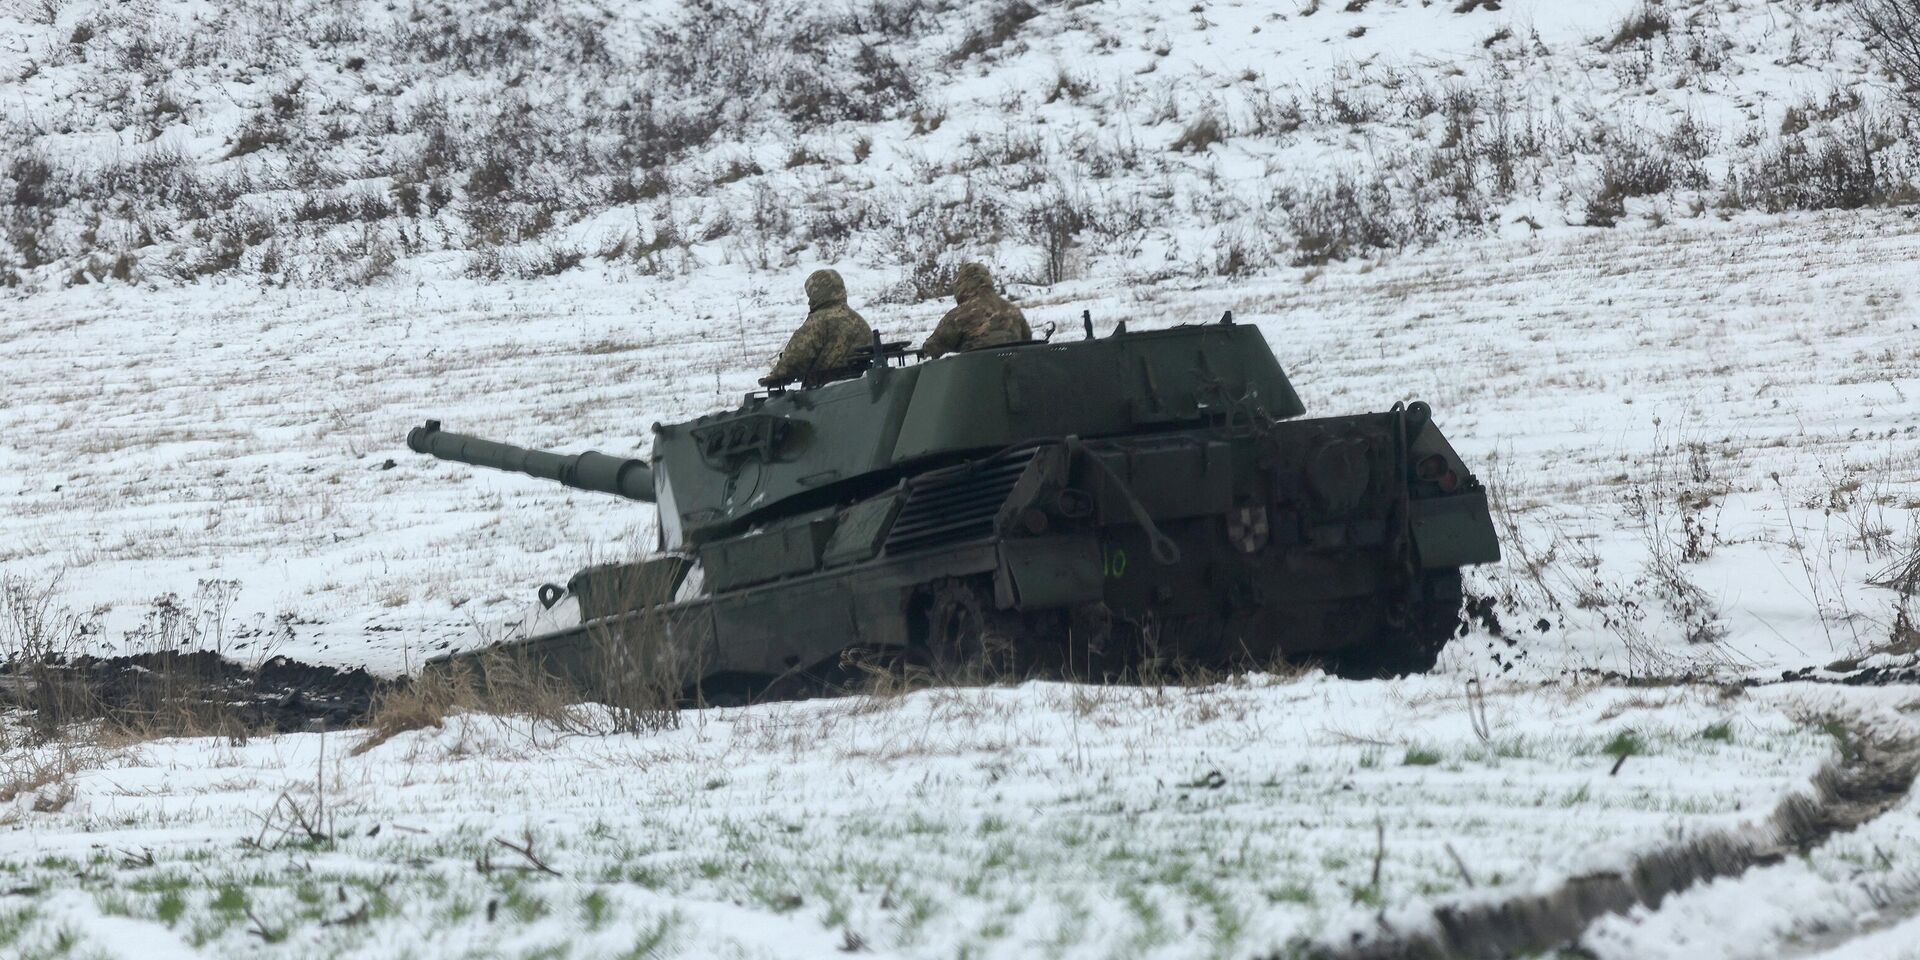 Die Welt: Leopard 2 tanks were just useless on battlefield